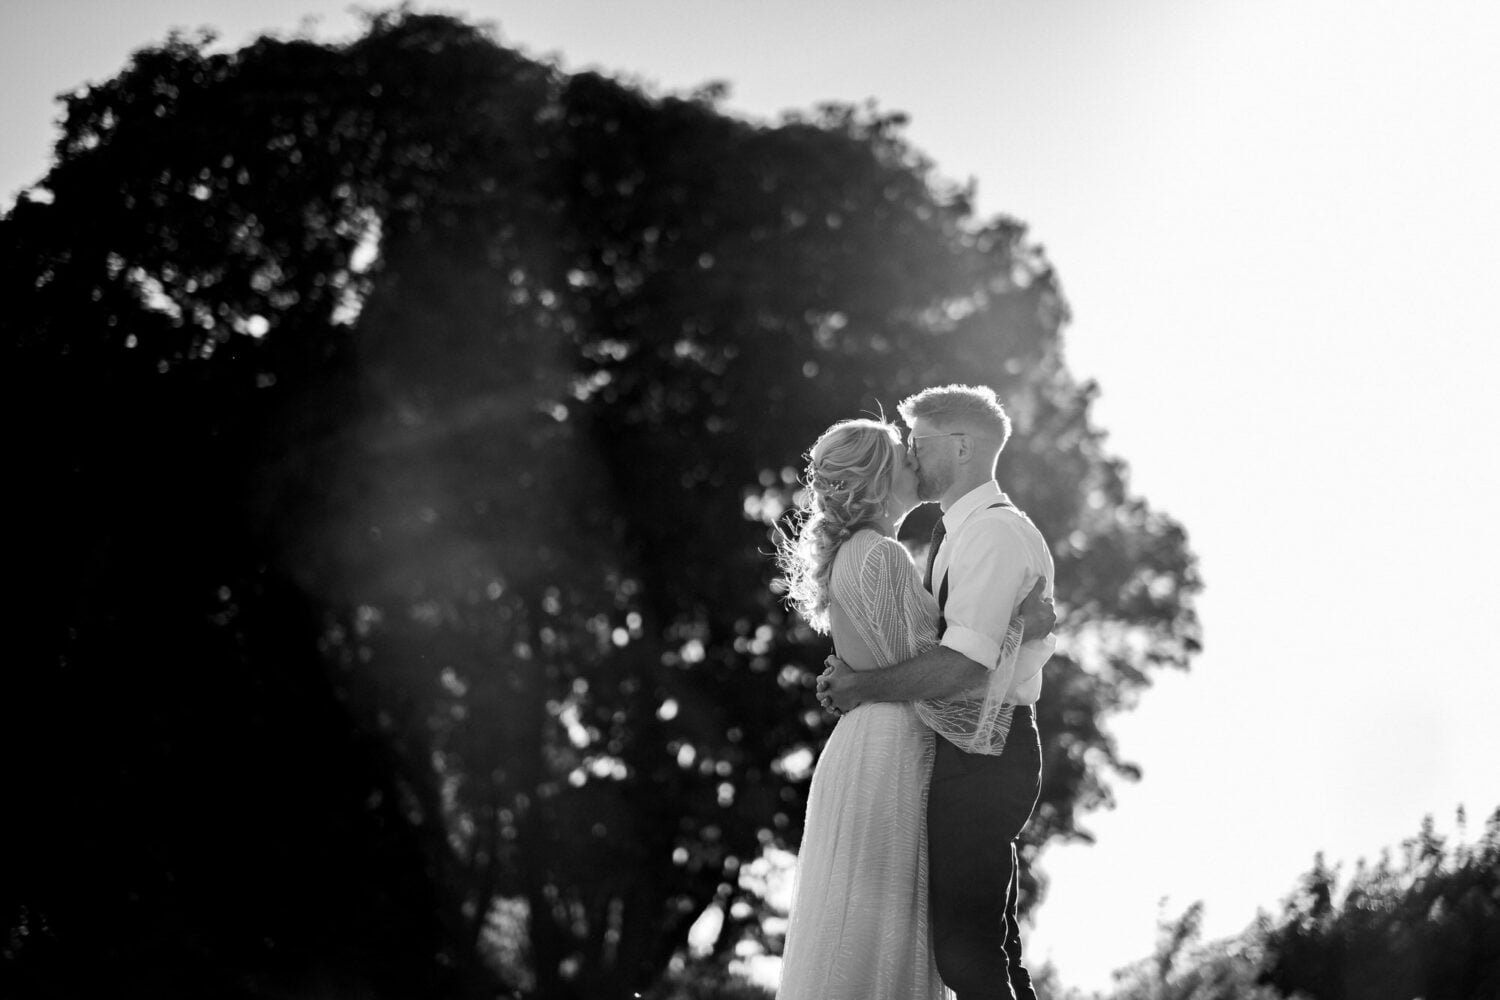 ASH BARTON WEDDING PHOTOGRAPHER